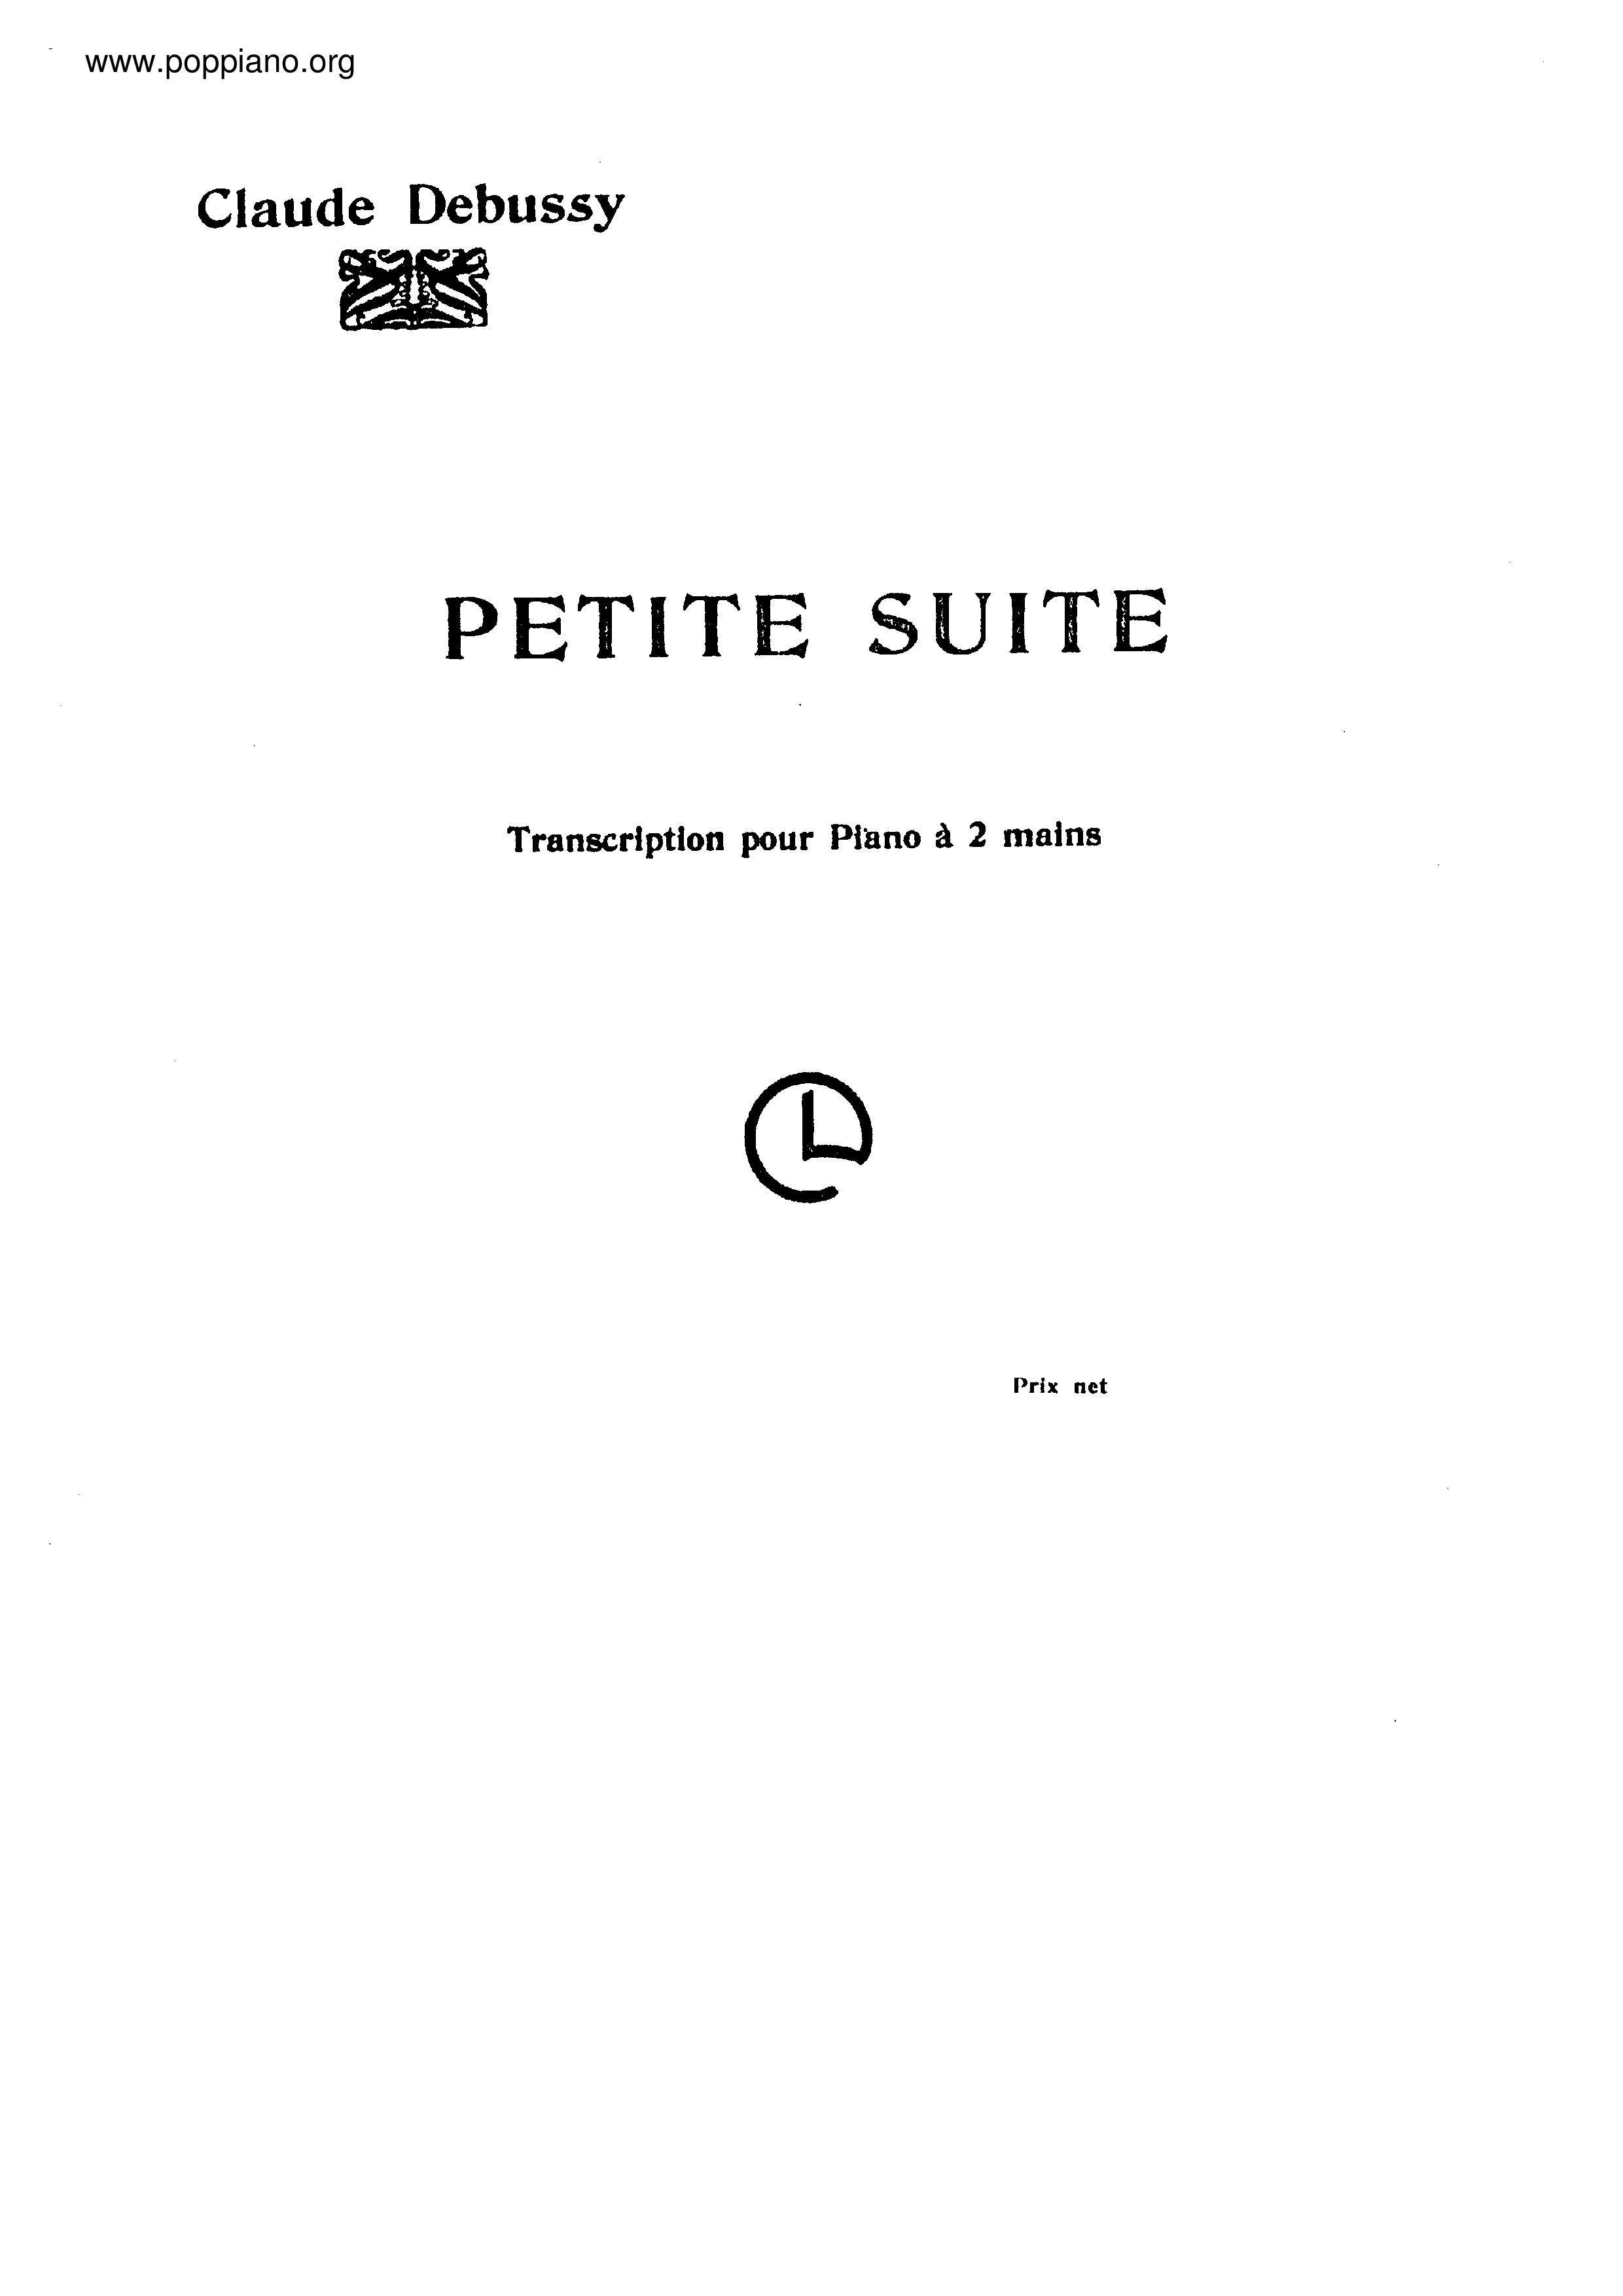 Petite Suiteピアノ譜